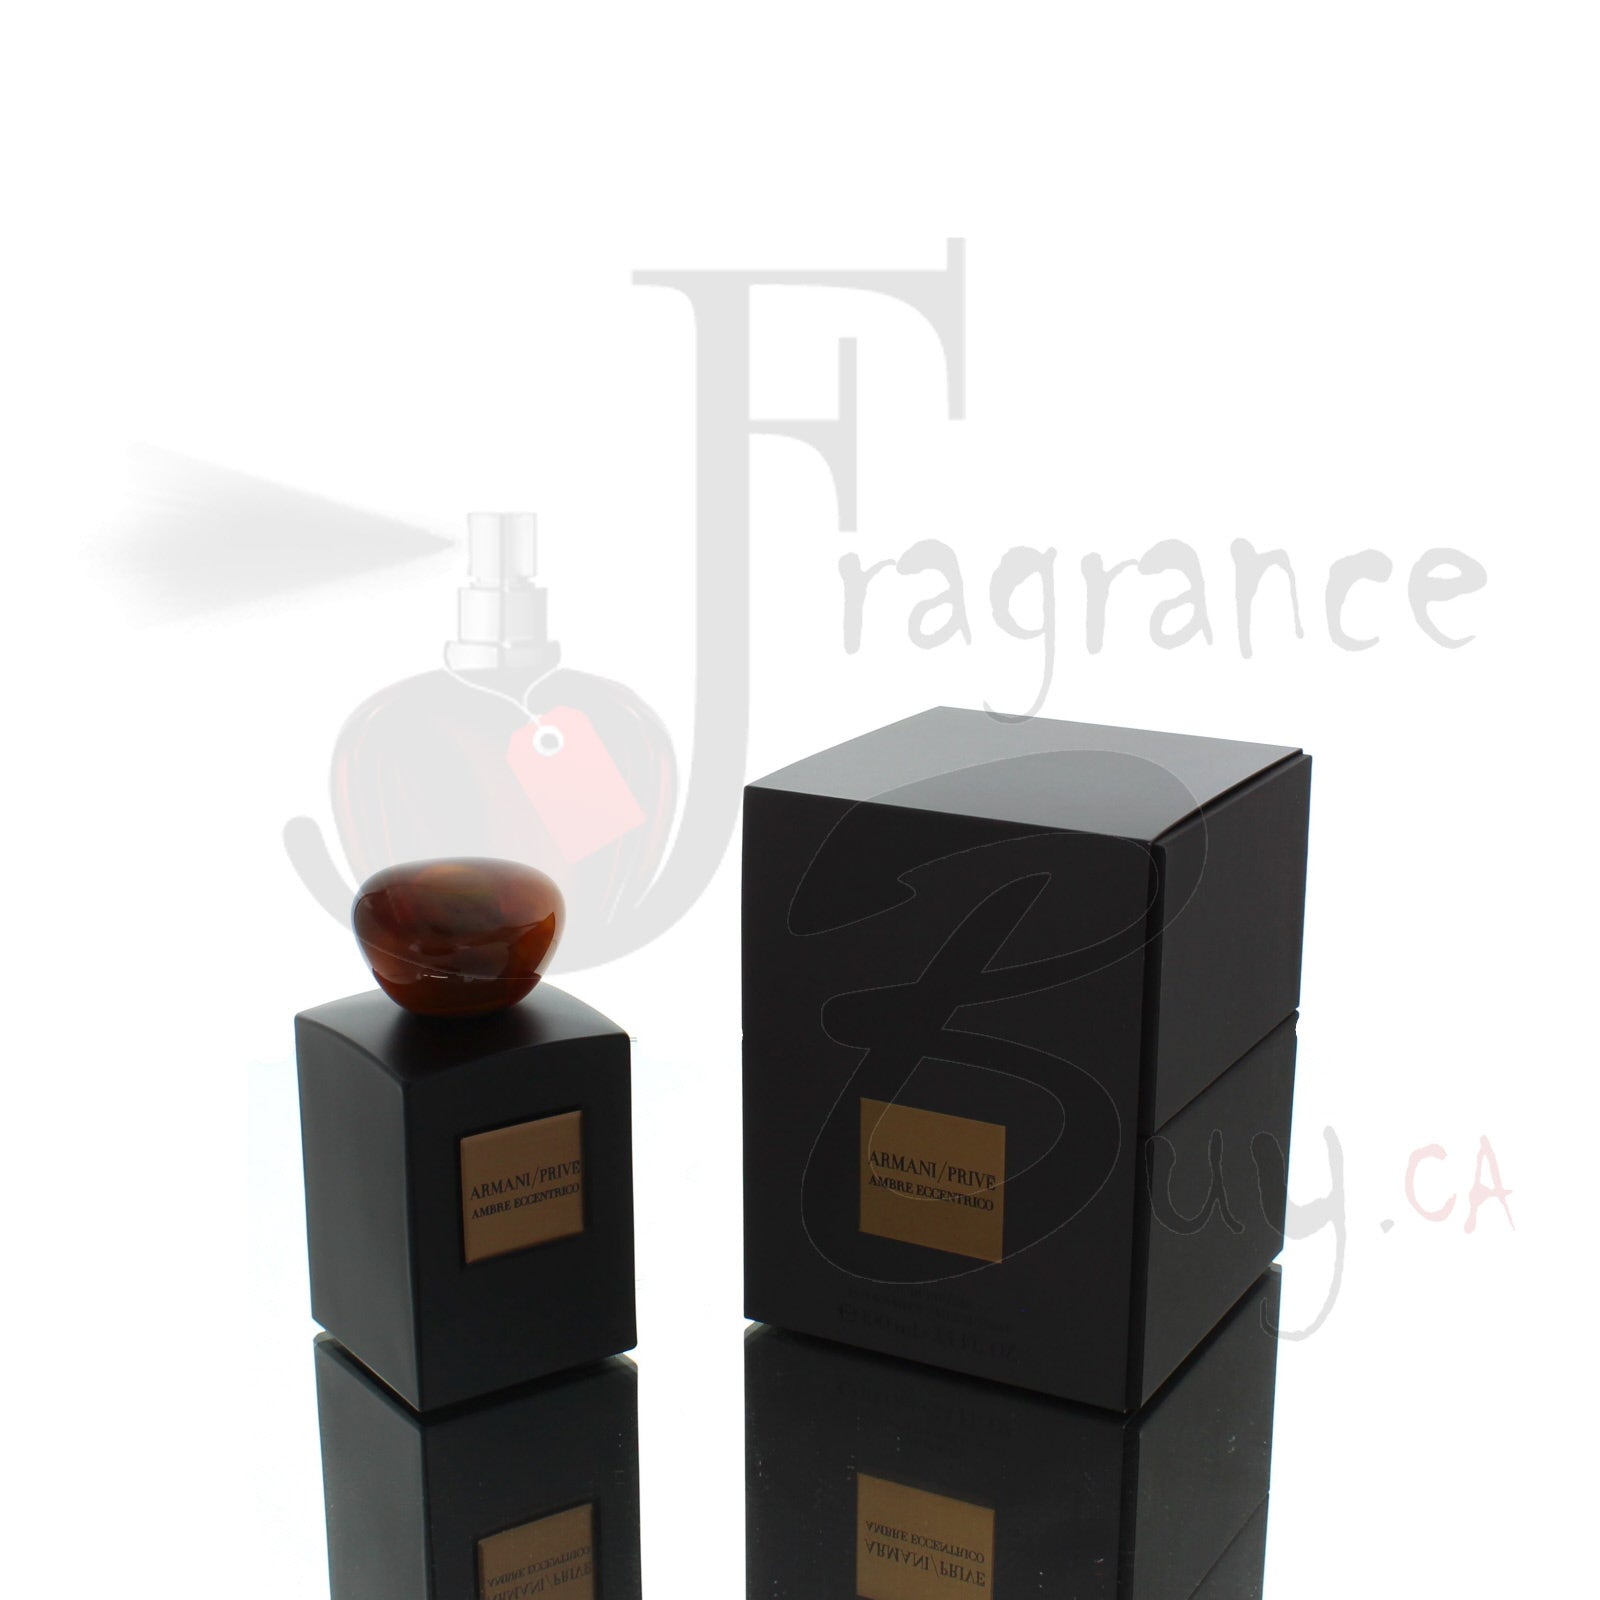  — Giorgio Armani Prive Ambre Eccentrico| Best Price,  Fragrancebuy Canada